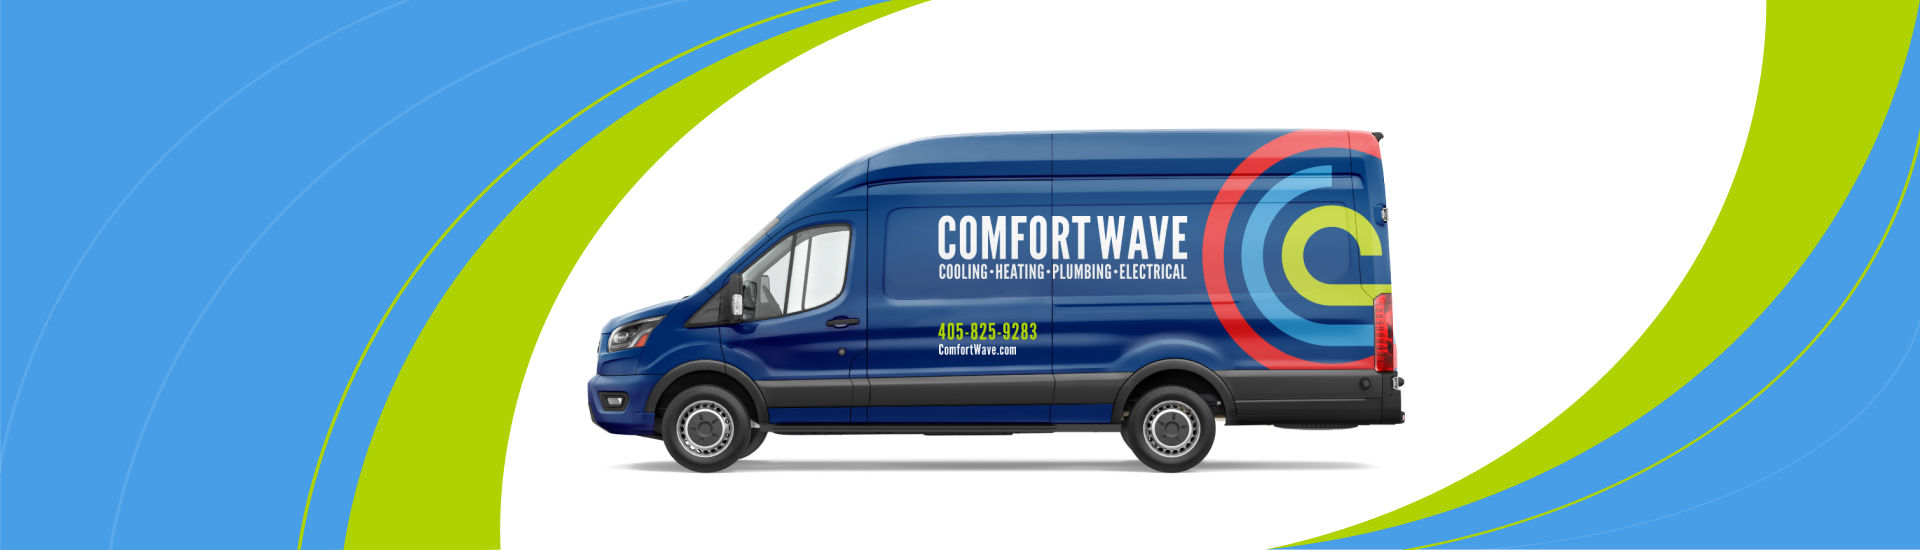 Comfort Wave Cooling, Heating, Plumbing, Electrical van